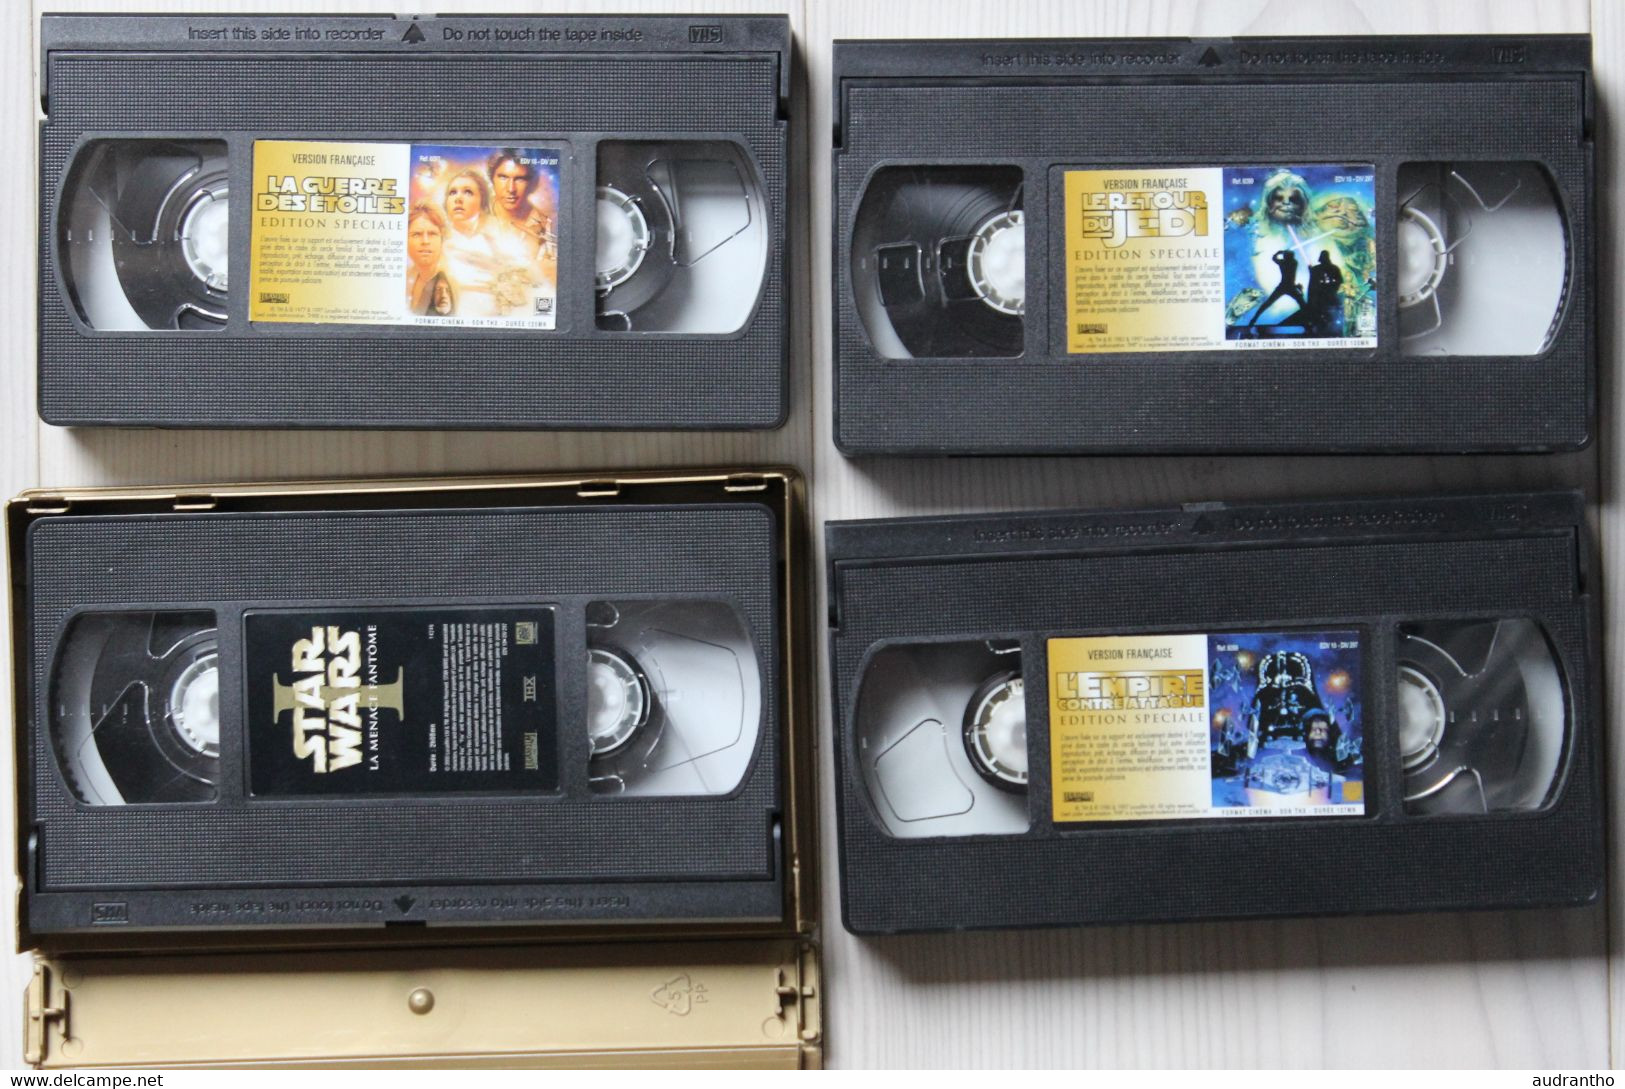 4 Cassettes Vidéos VHS Collector STAR WARS La Guerre Des étoiles L'empire Contre Attaque Retour Du Jedi Menace Fantôme - Colecciones & Series